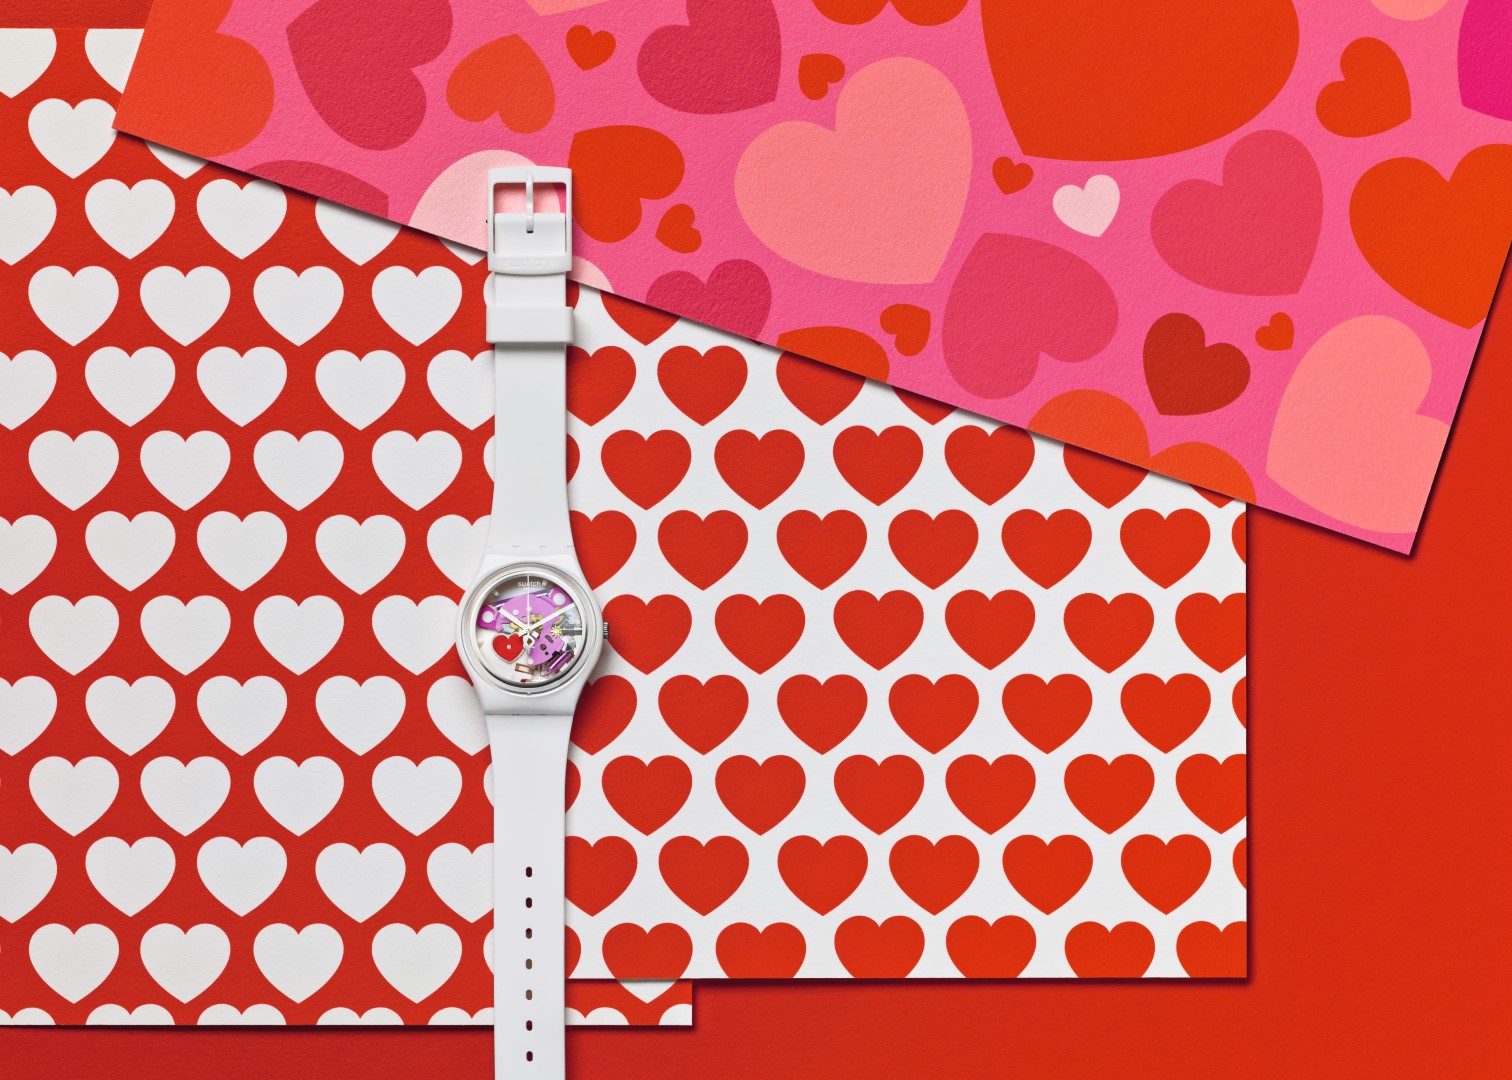 San Valentino 2016: Swatch presenta Tender Present… da “maneggiare con cura”